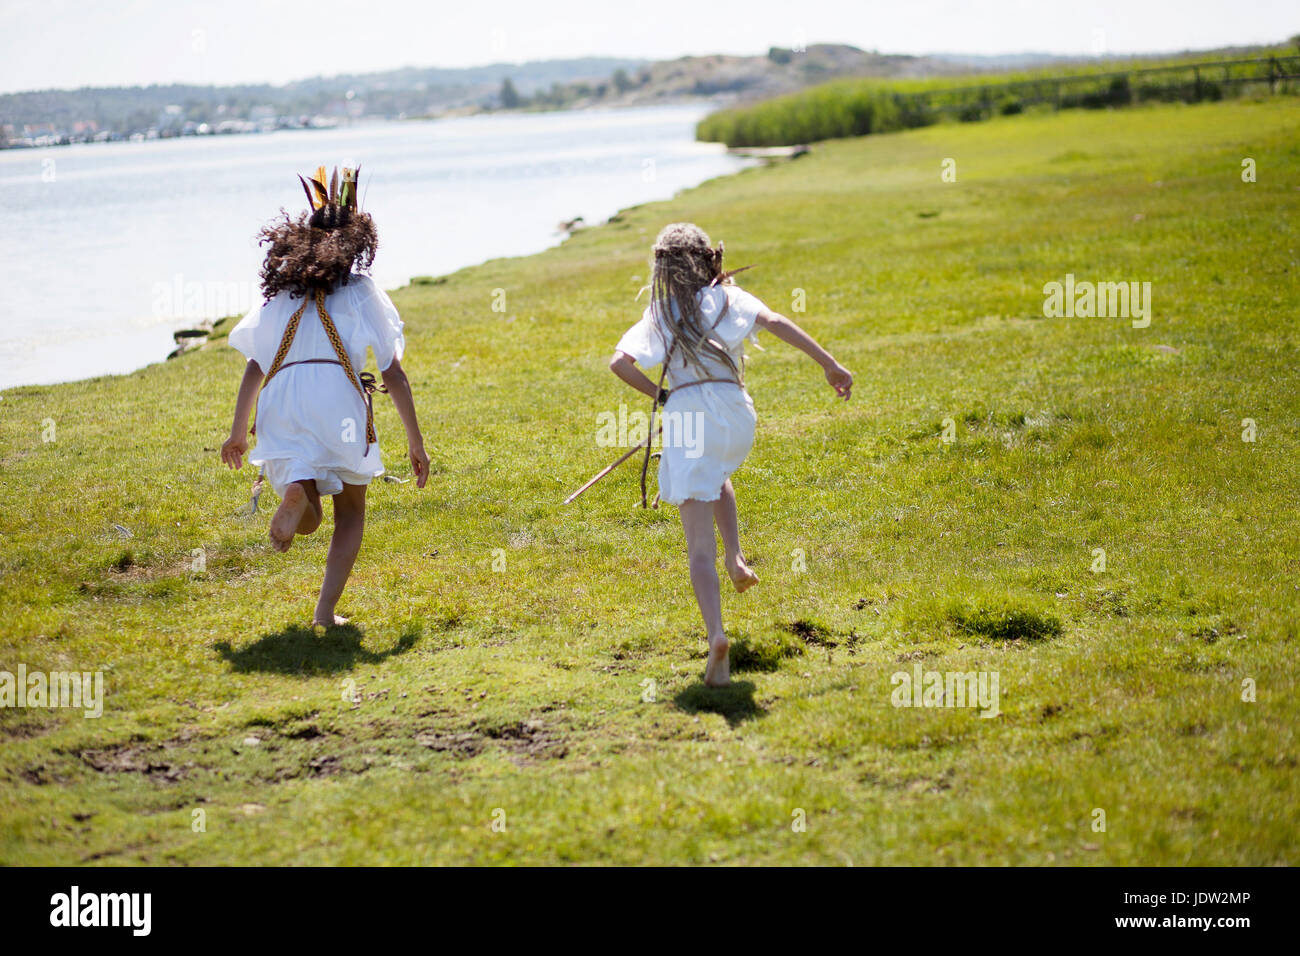 Girls running in Native American costume Stock Photo